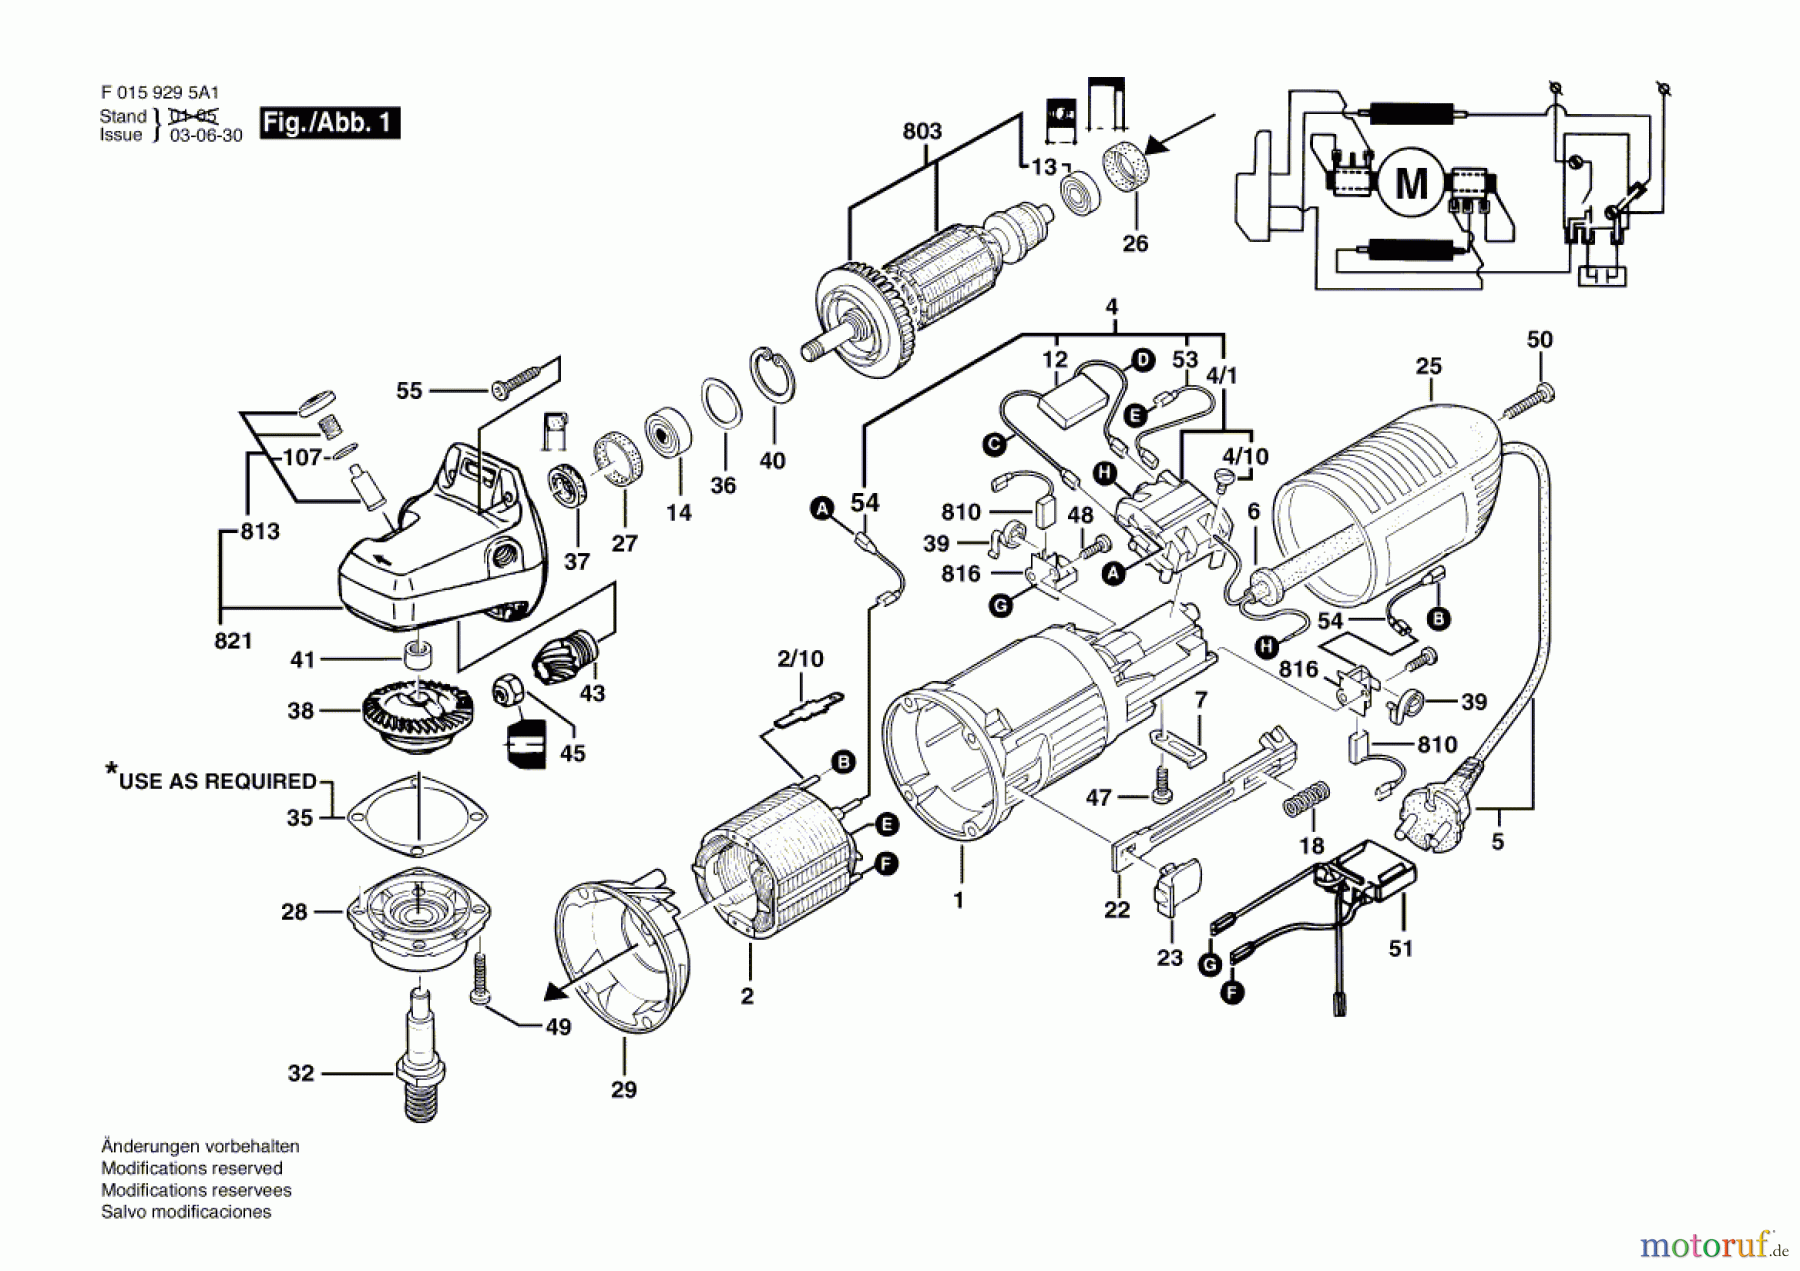  Bosch Werkzeug Winkelschleifer 9295 A1 Seite 1